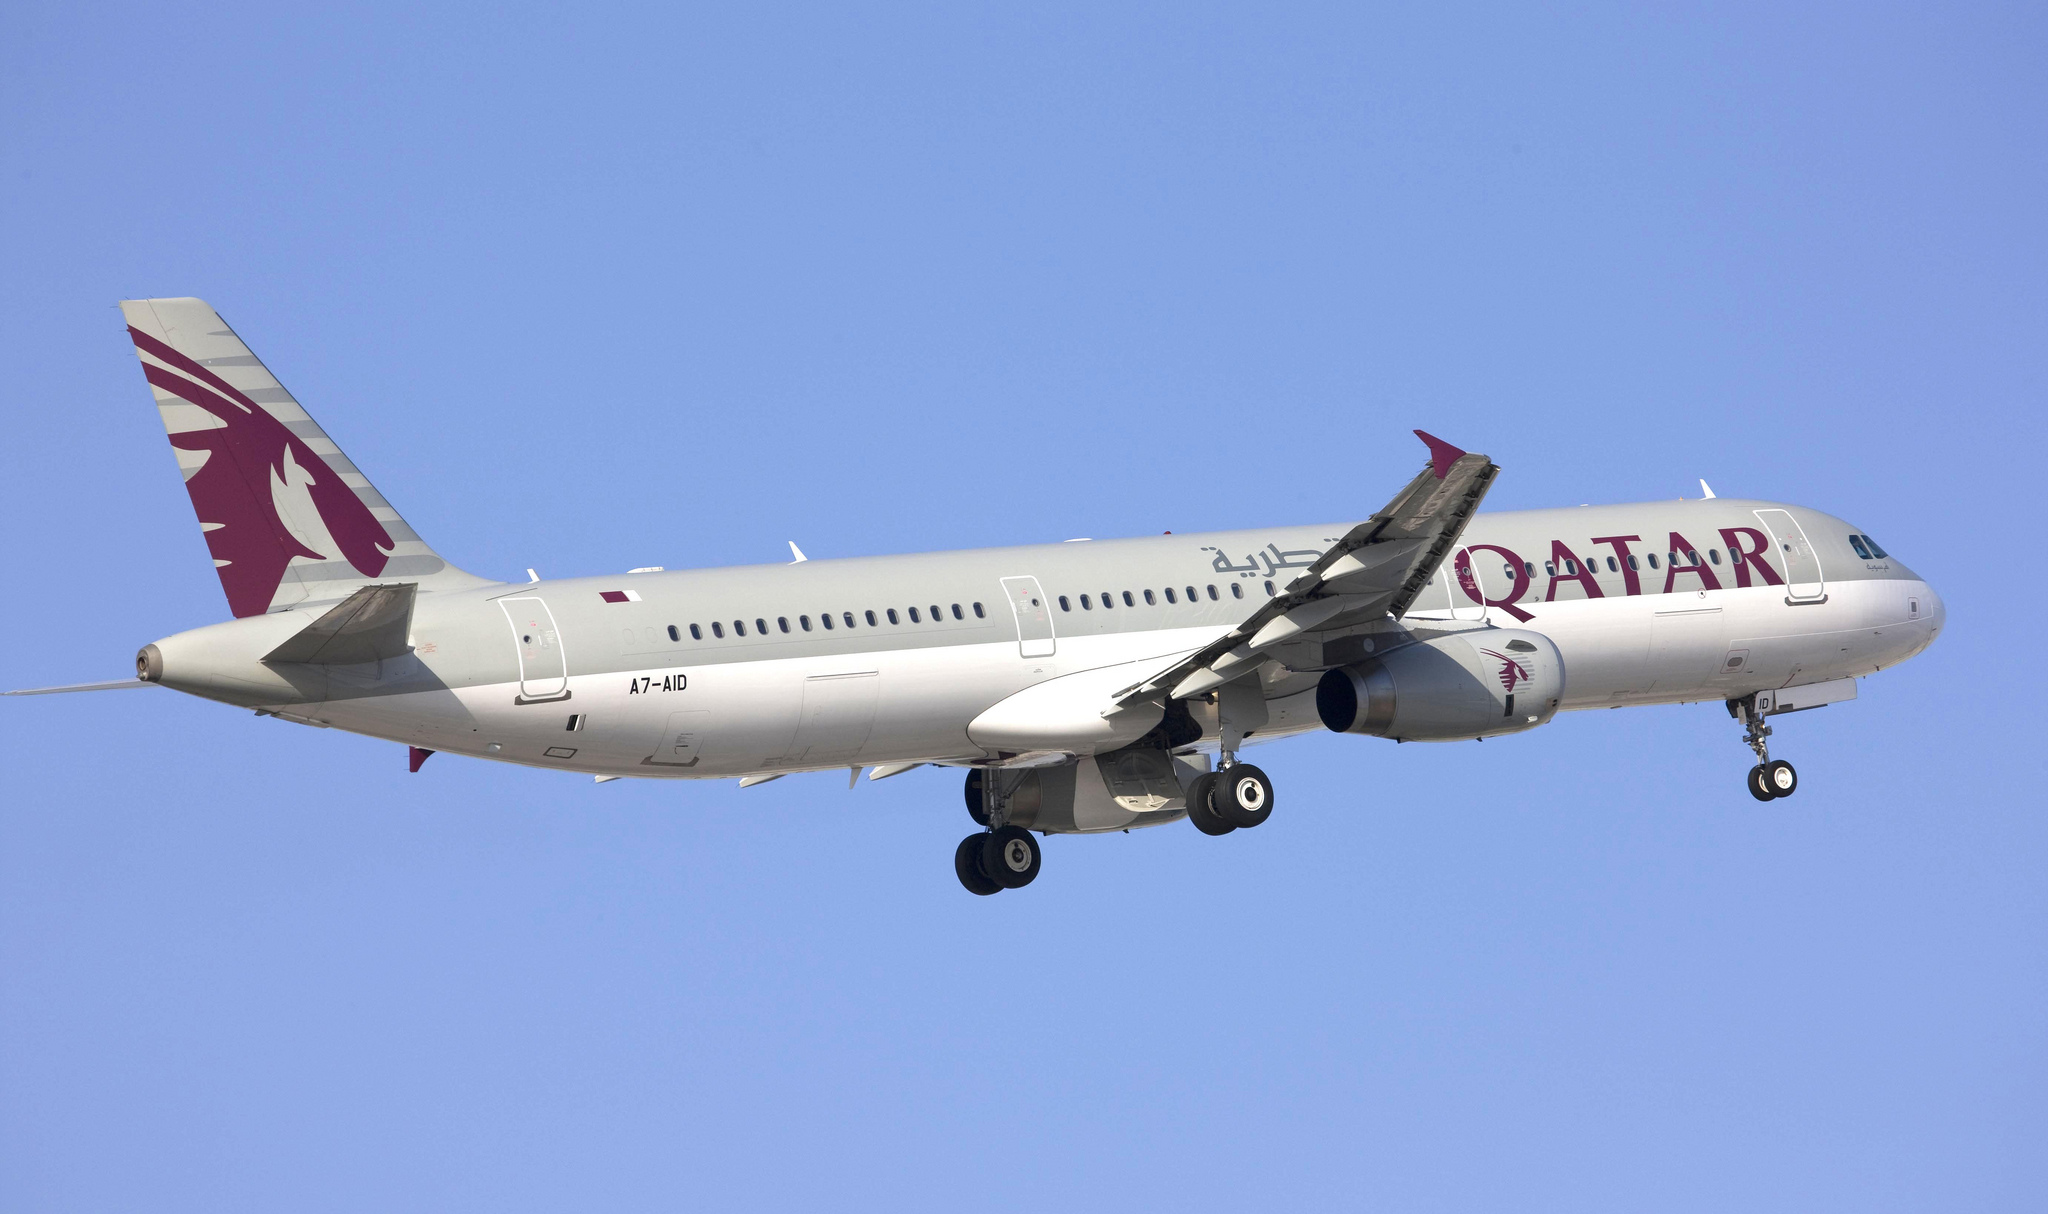 BA strike lease Qatar aircraft July 2017